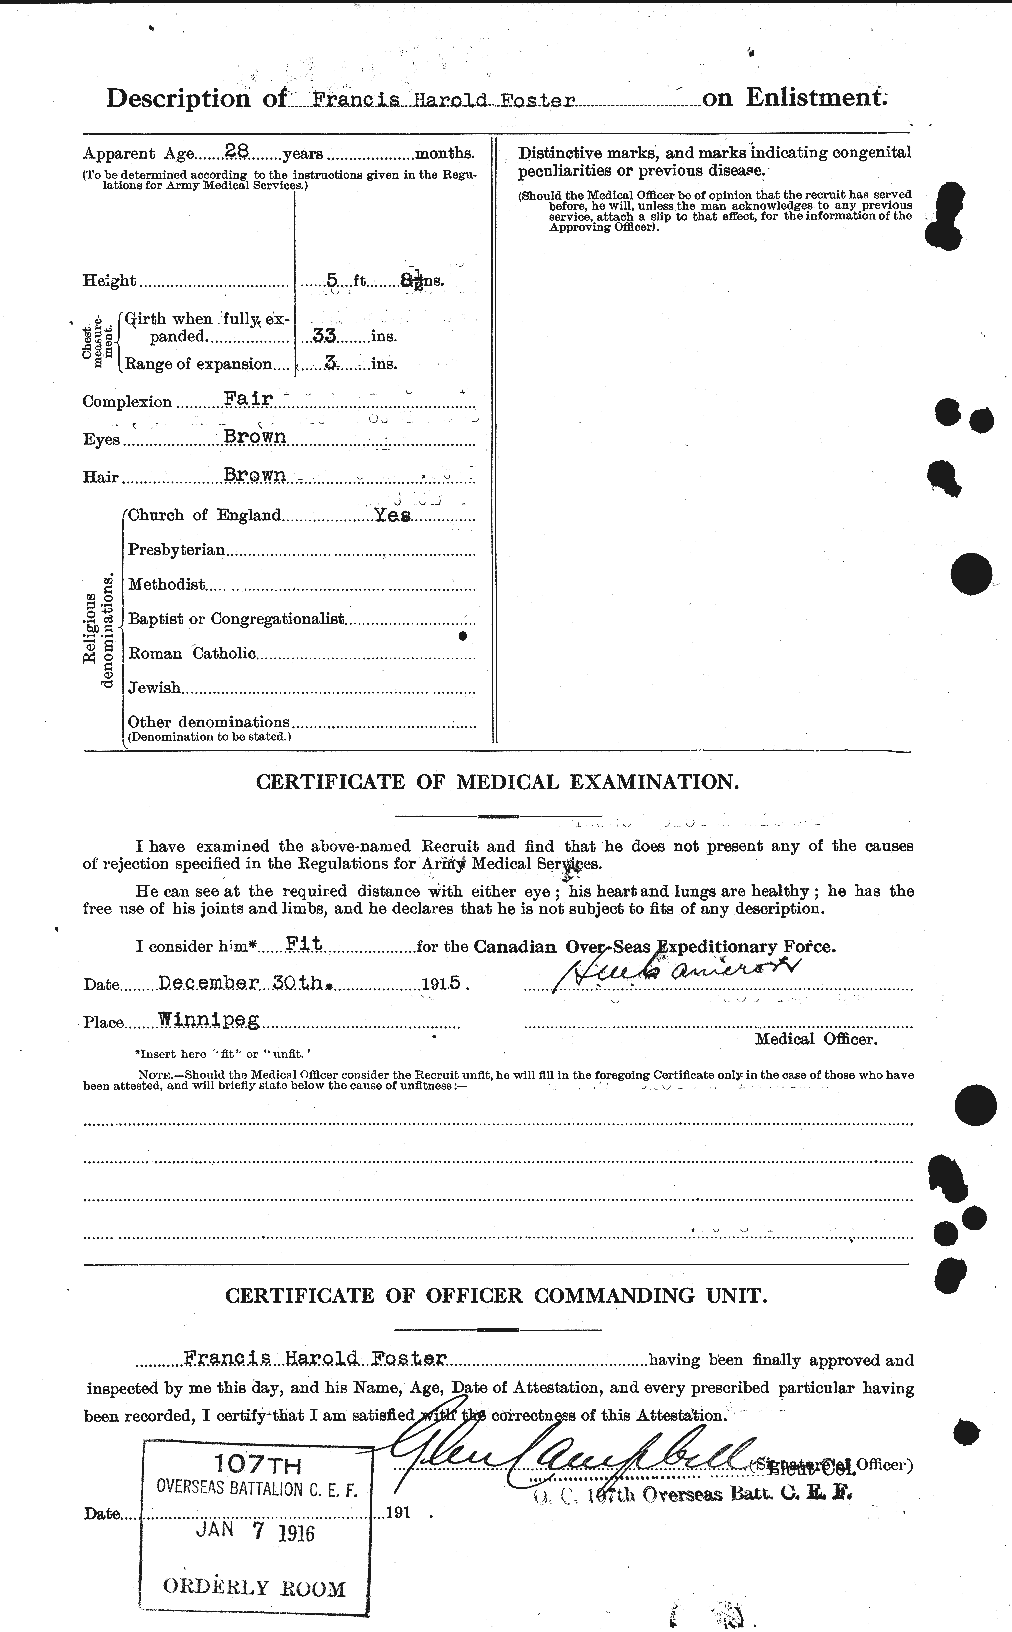 Dossiers du Personnel de la Première Guerre mondiale - CEC 330614b